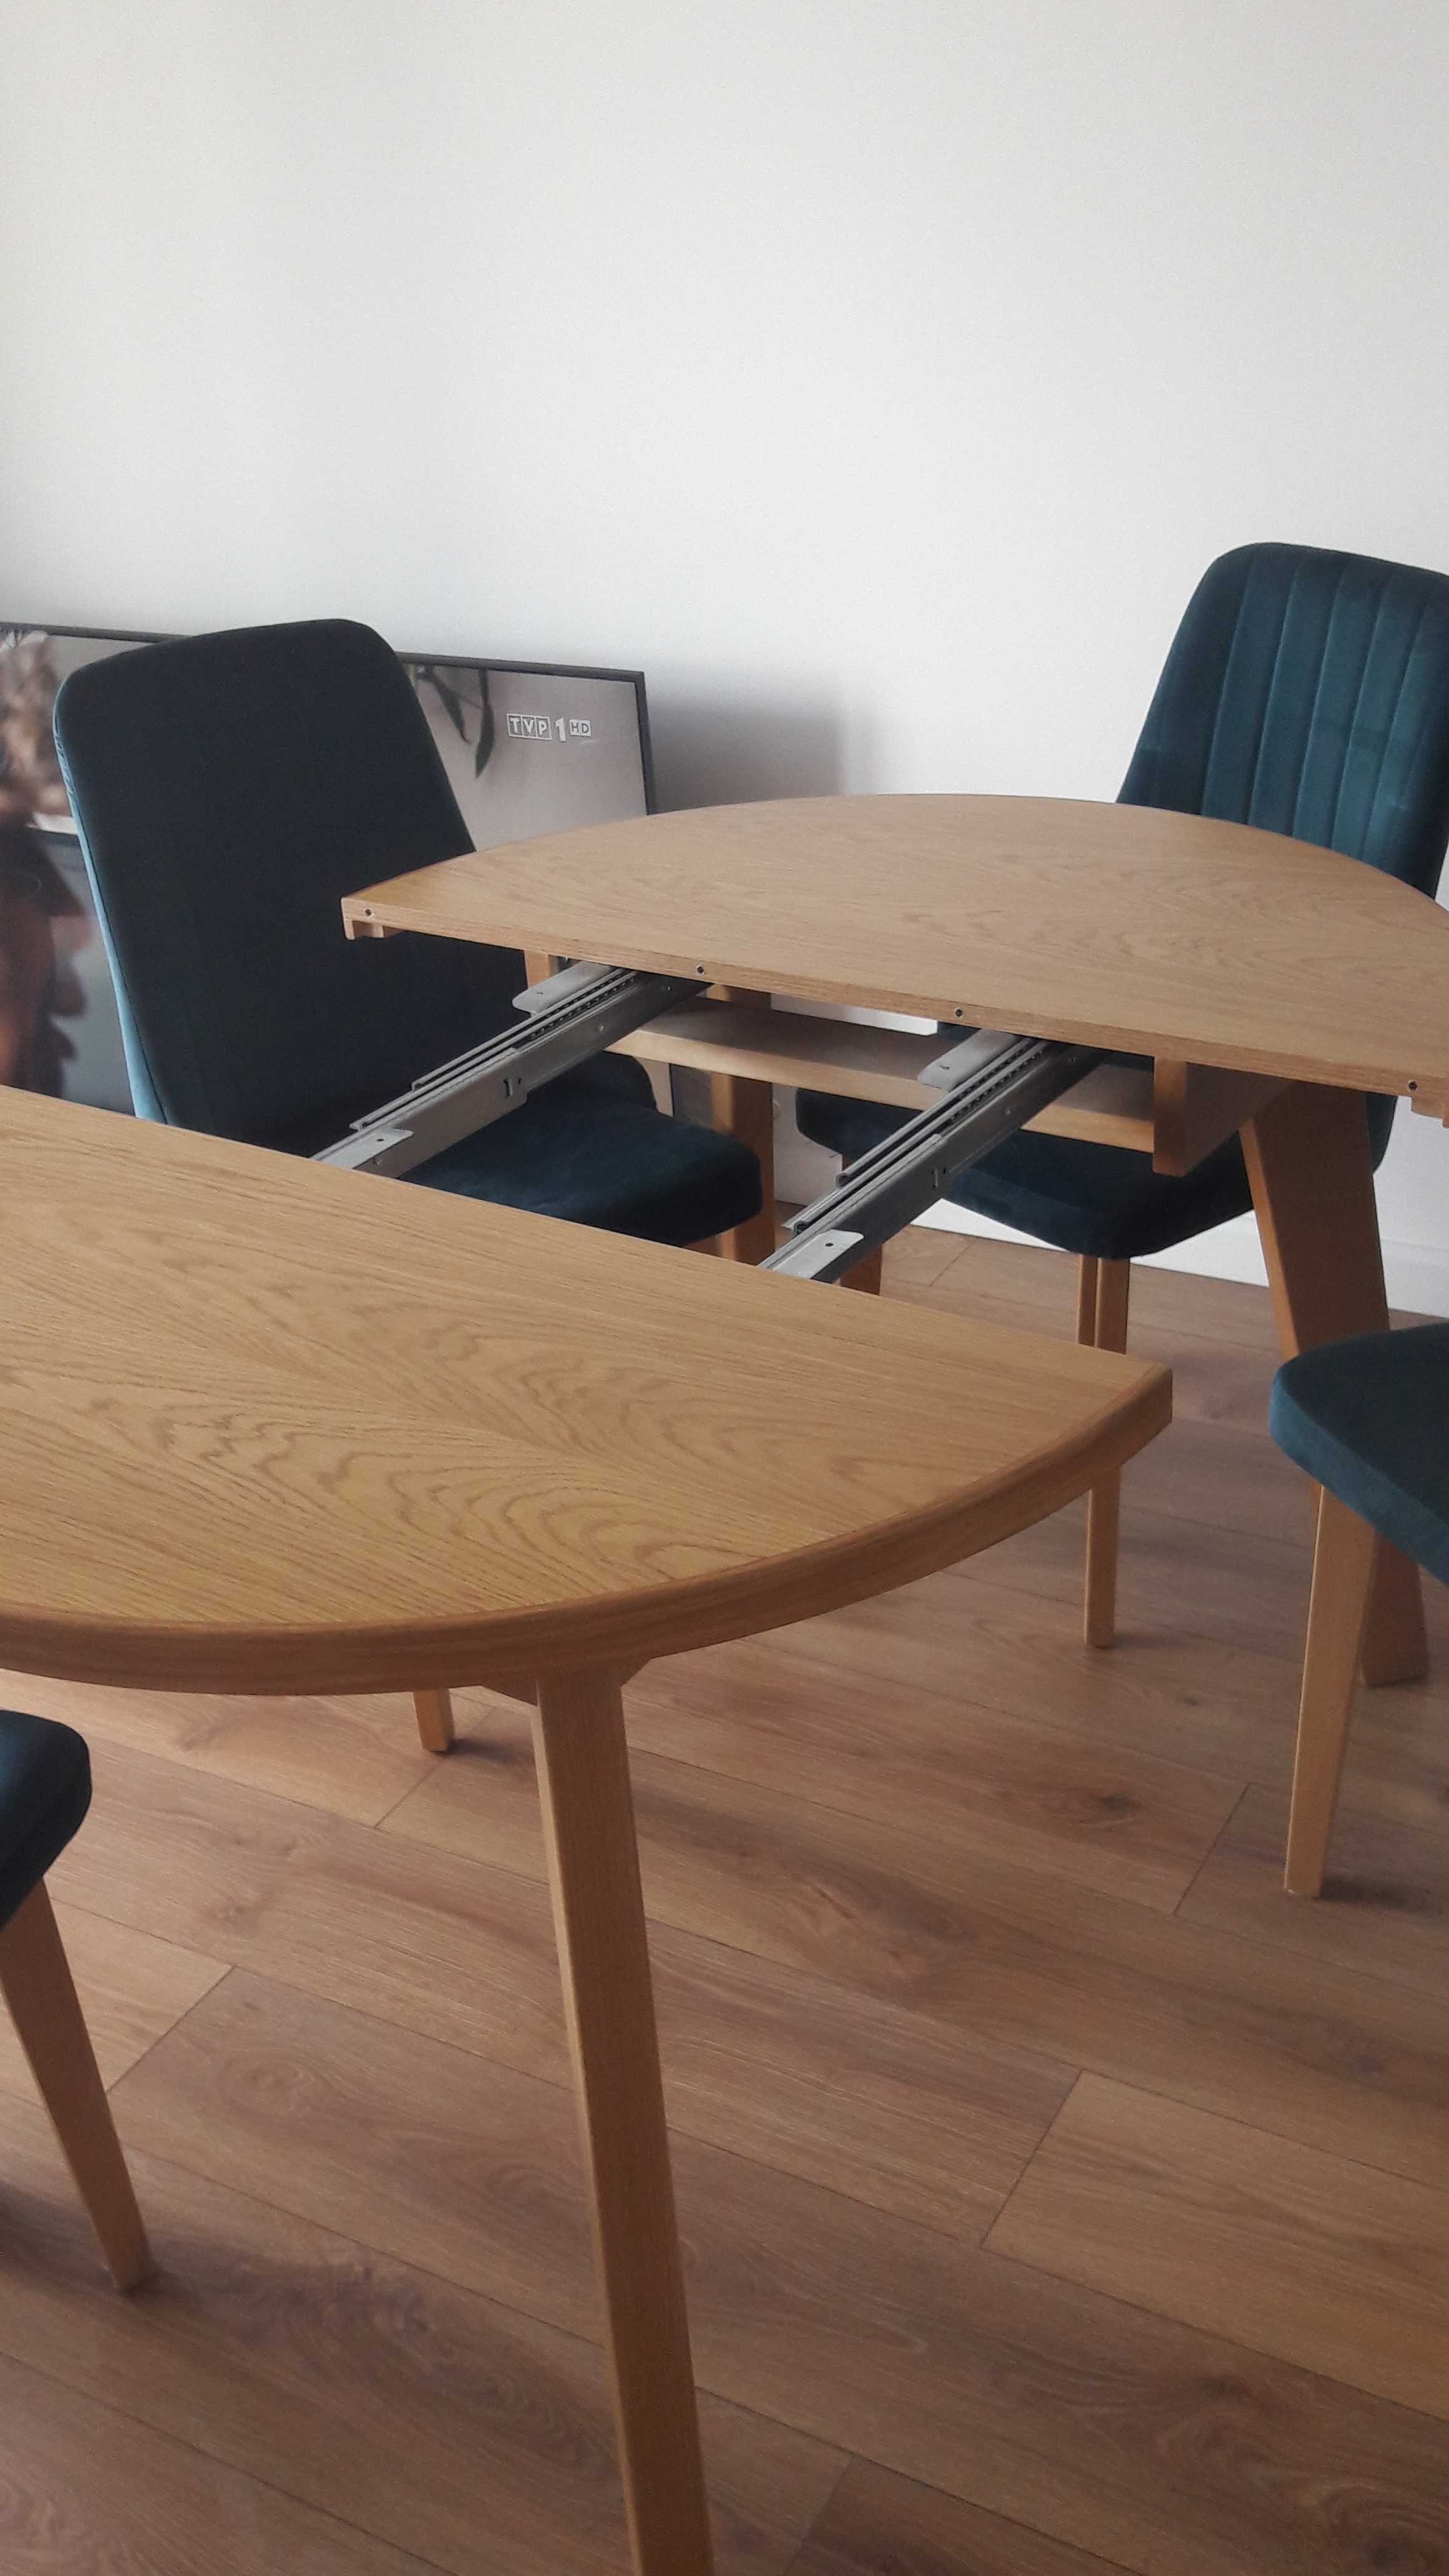 ZESTAW Stół drewniany rozkładany + 4 krzesła. DĄB